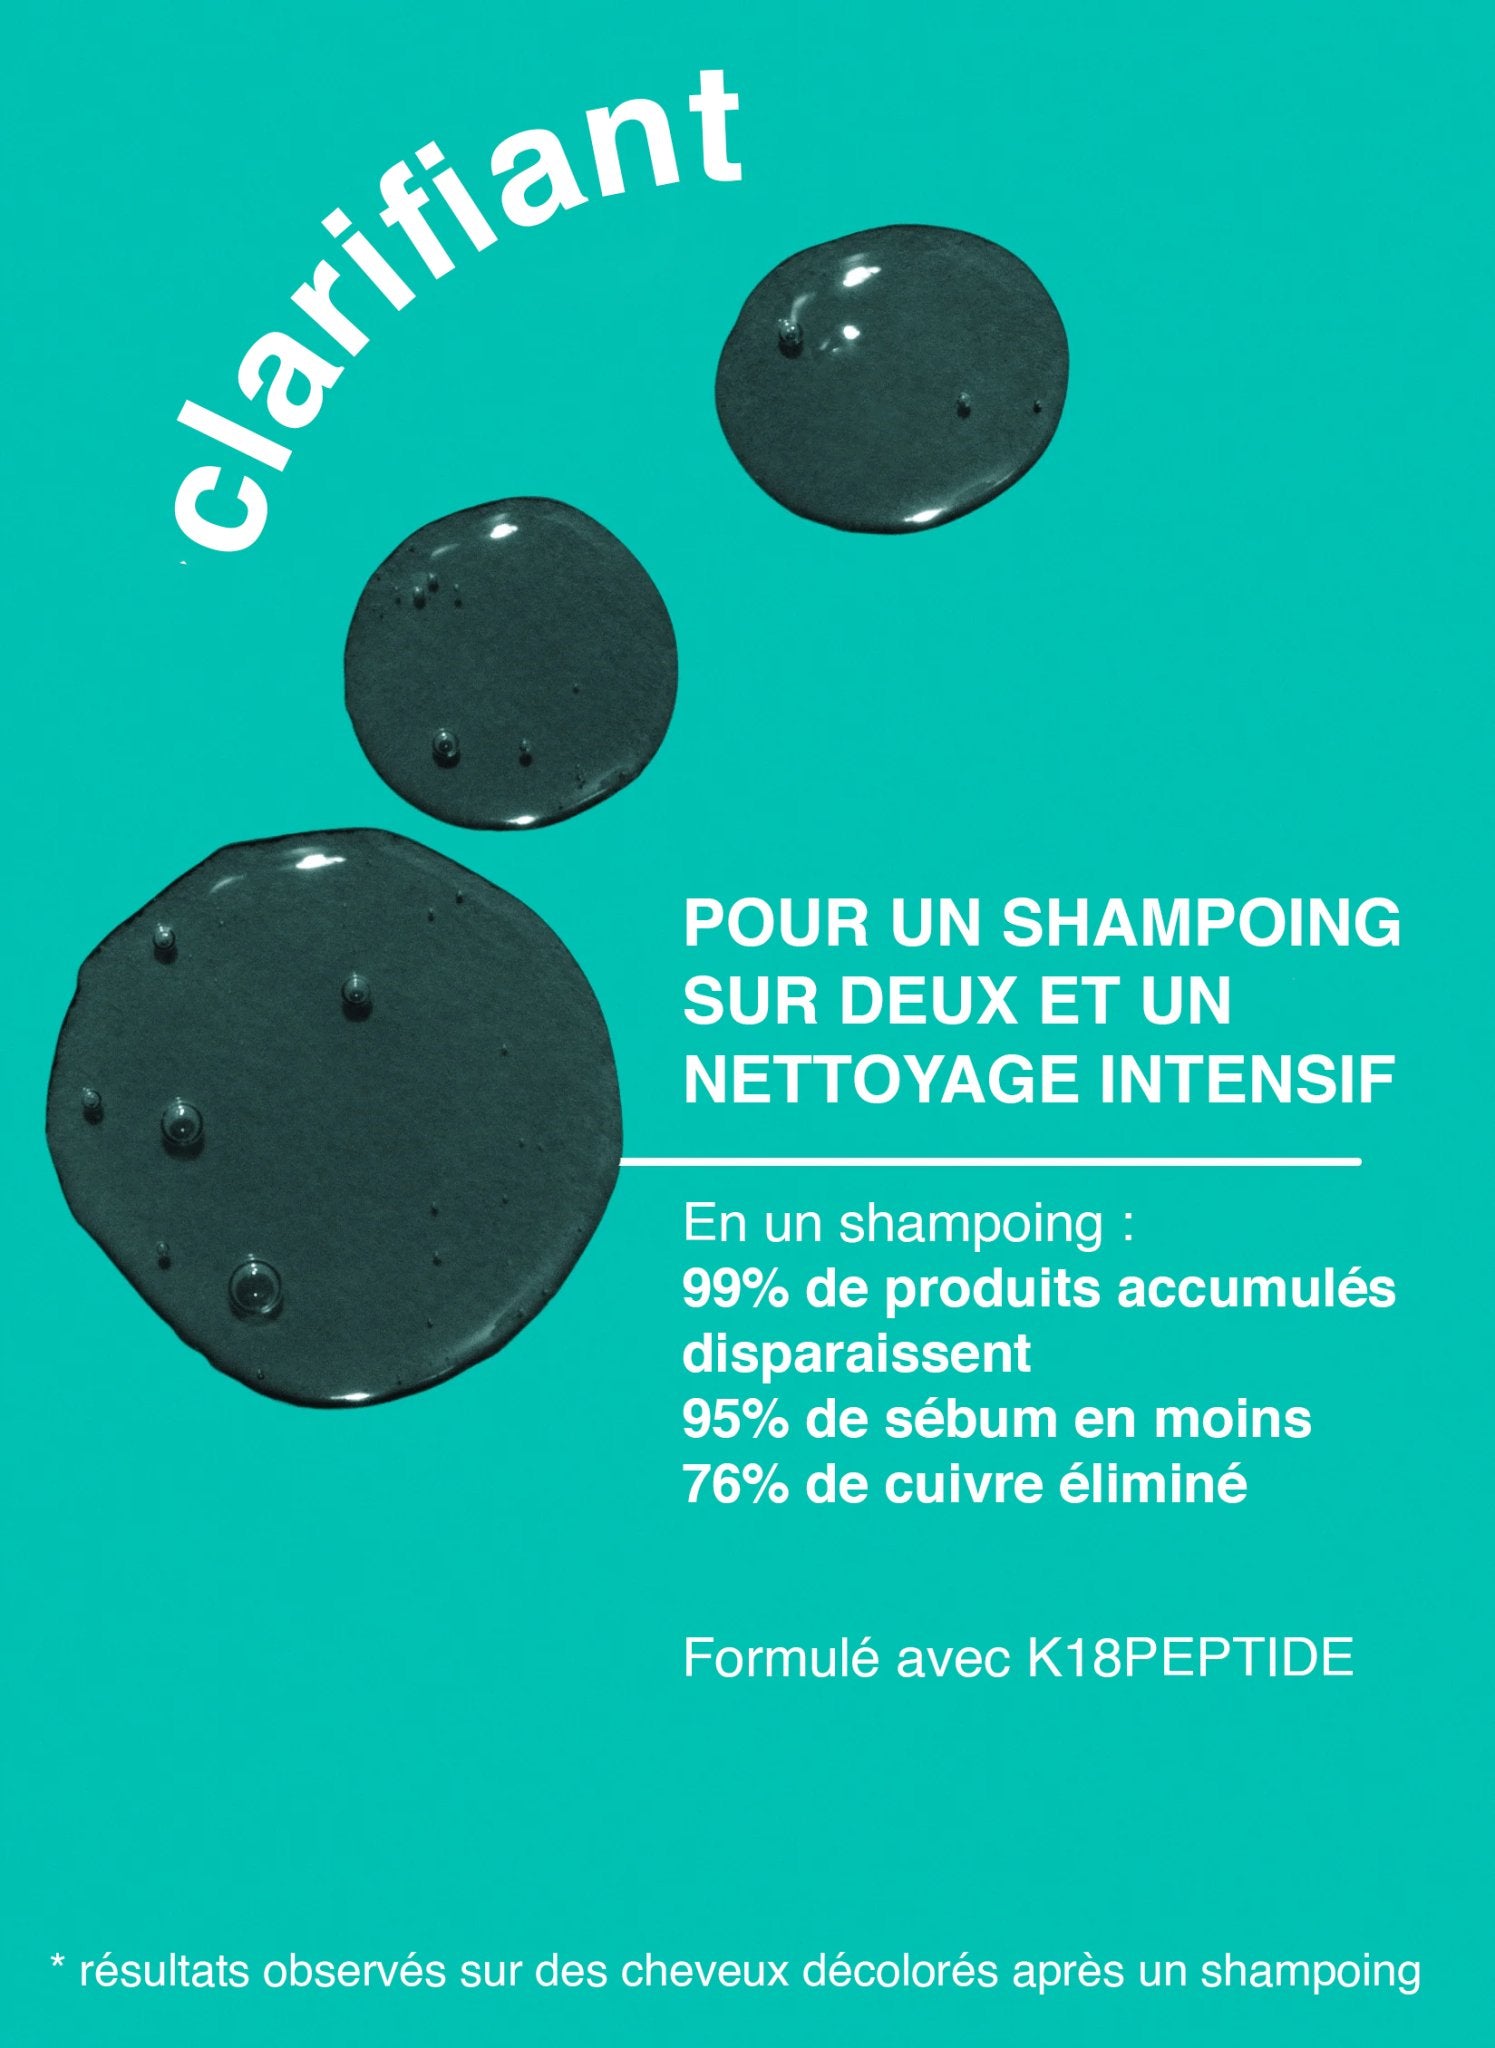 Shampoing Détox K18 Peptide Prep™ : Votre allié pour des cheveux sains - Salon Coralie Aumaitre